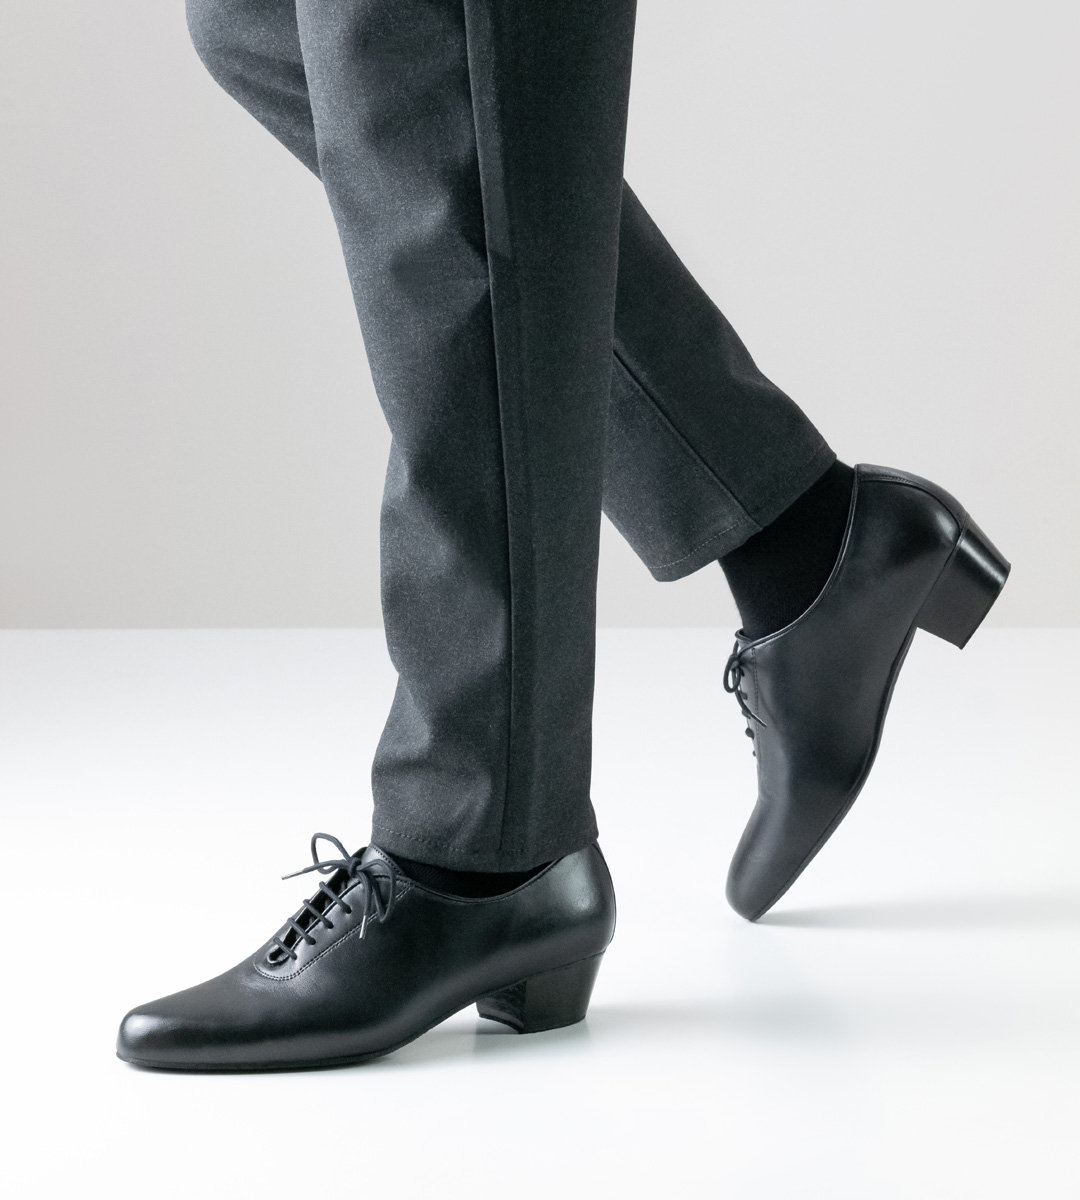 Chaussures de danse latine pour hommes de Werner Kern avec une hauteur de talon de 4 cm